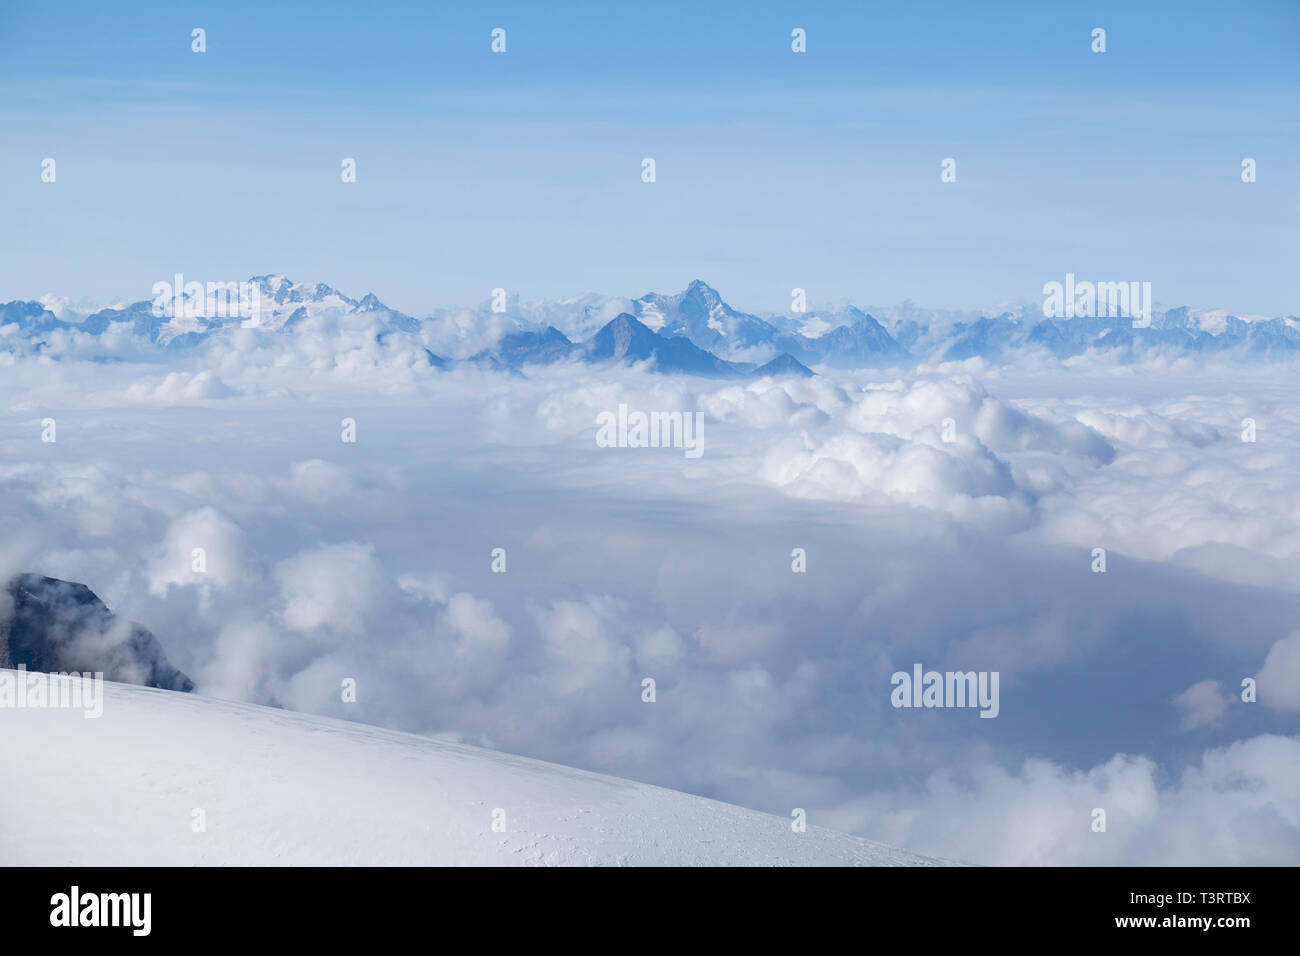 Haut Valais, vue depuis le terminus du téléphérique à 3820m au-dessus de la ligne de nuages vers les montagnes alpines. Banque D'Images